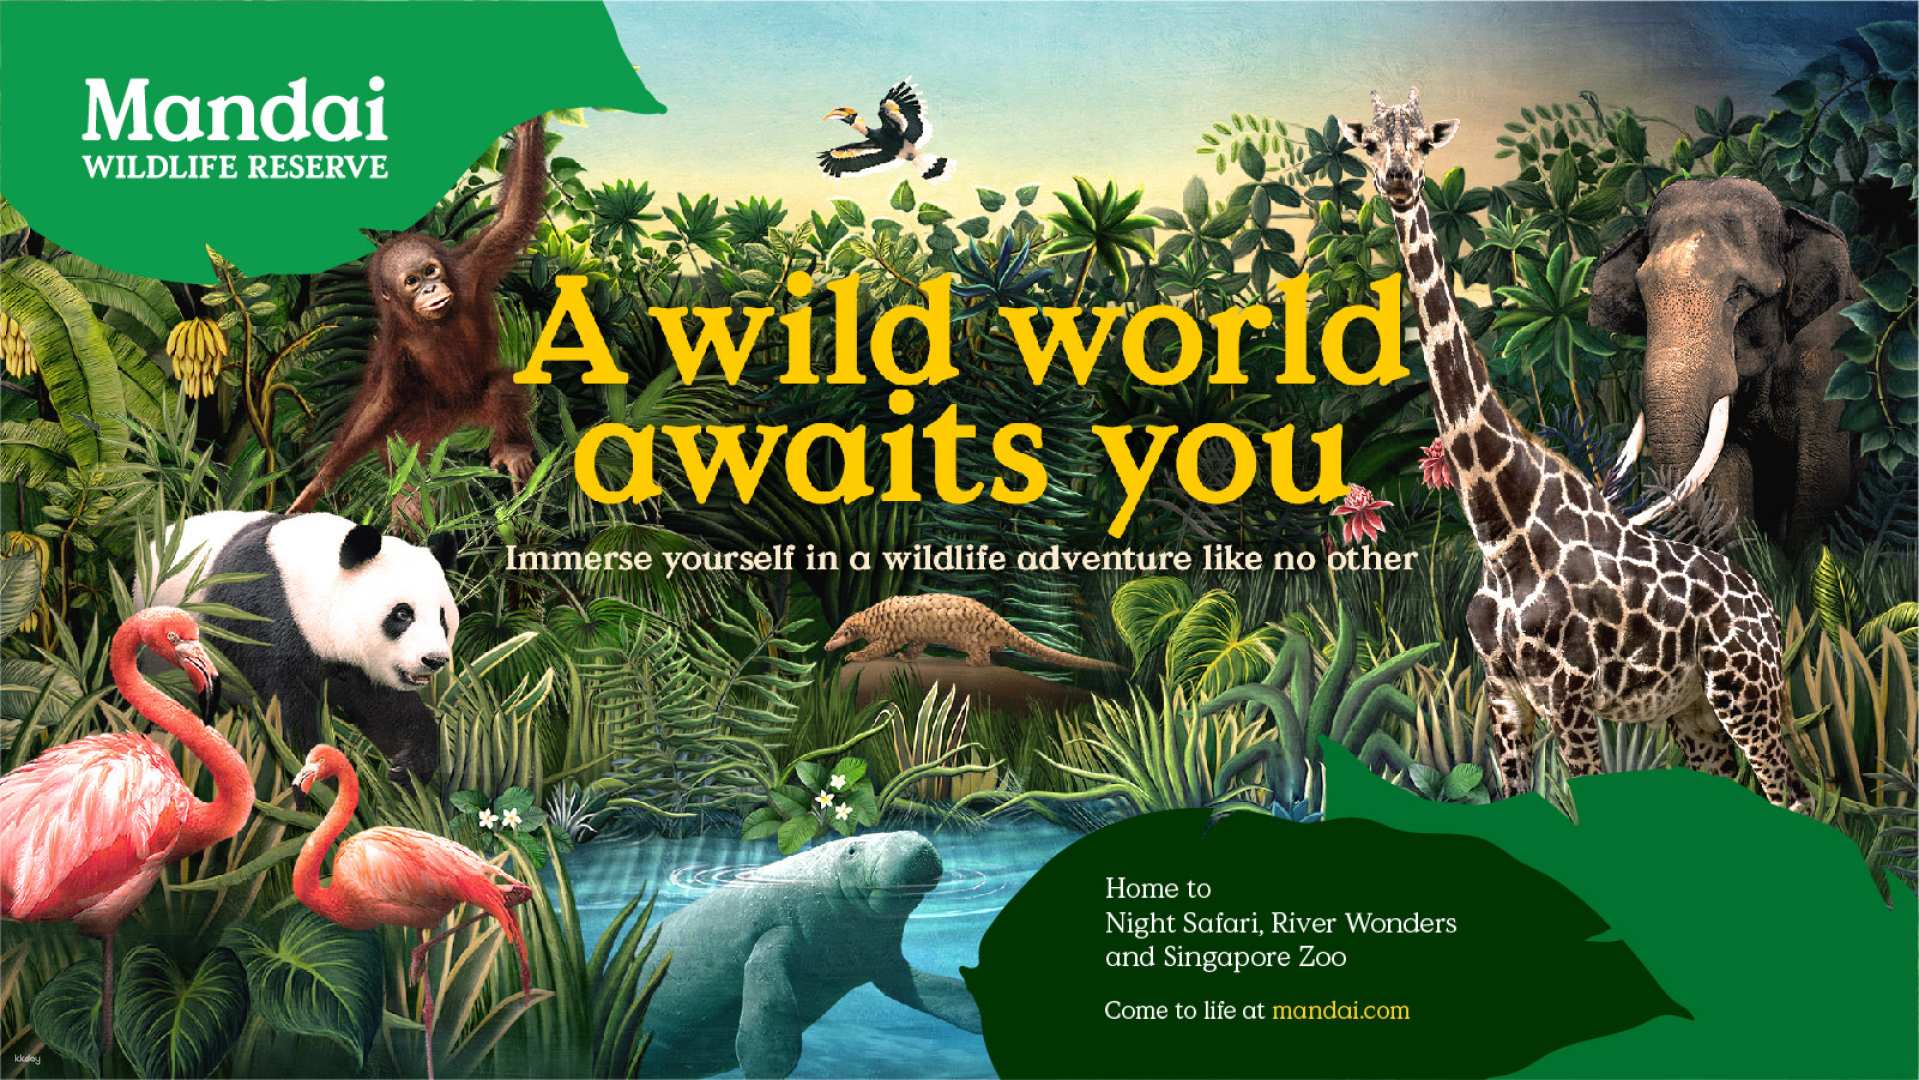 新加坡-萬態野生動物園多園套票| 新加坡動物園&河川生態園&夜間野生動物園及飛禽公園